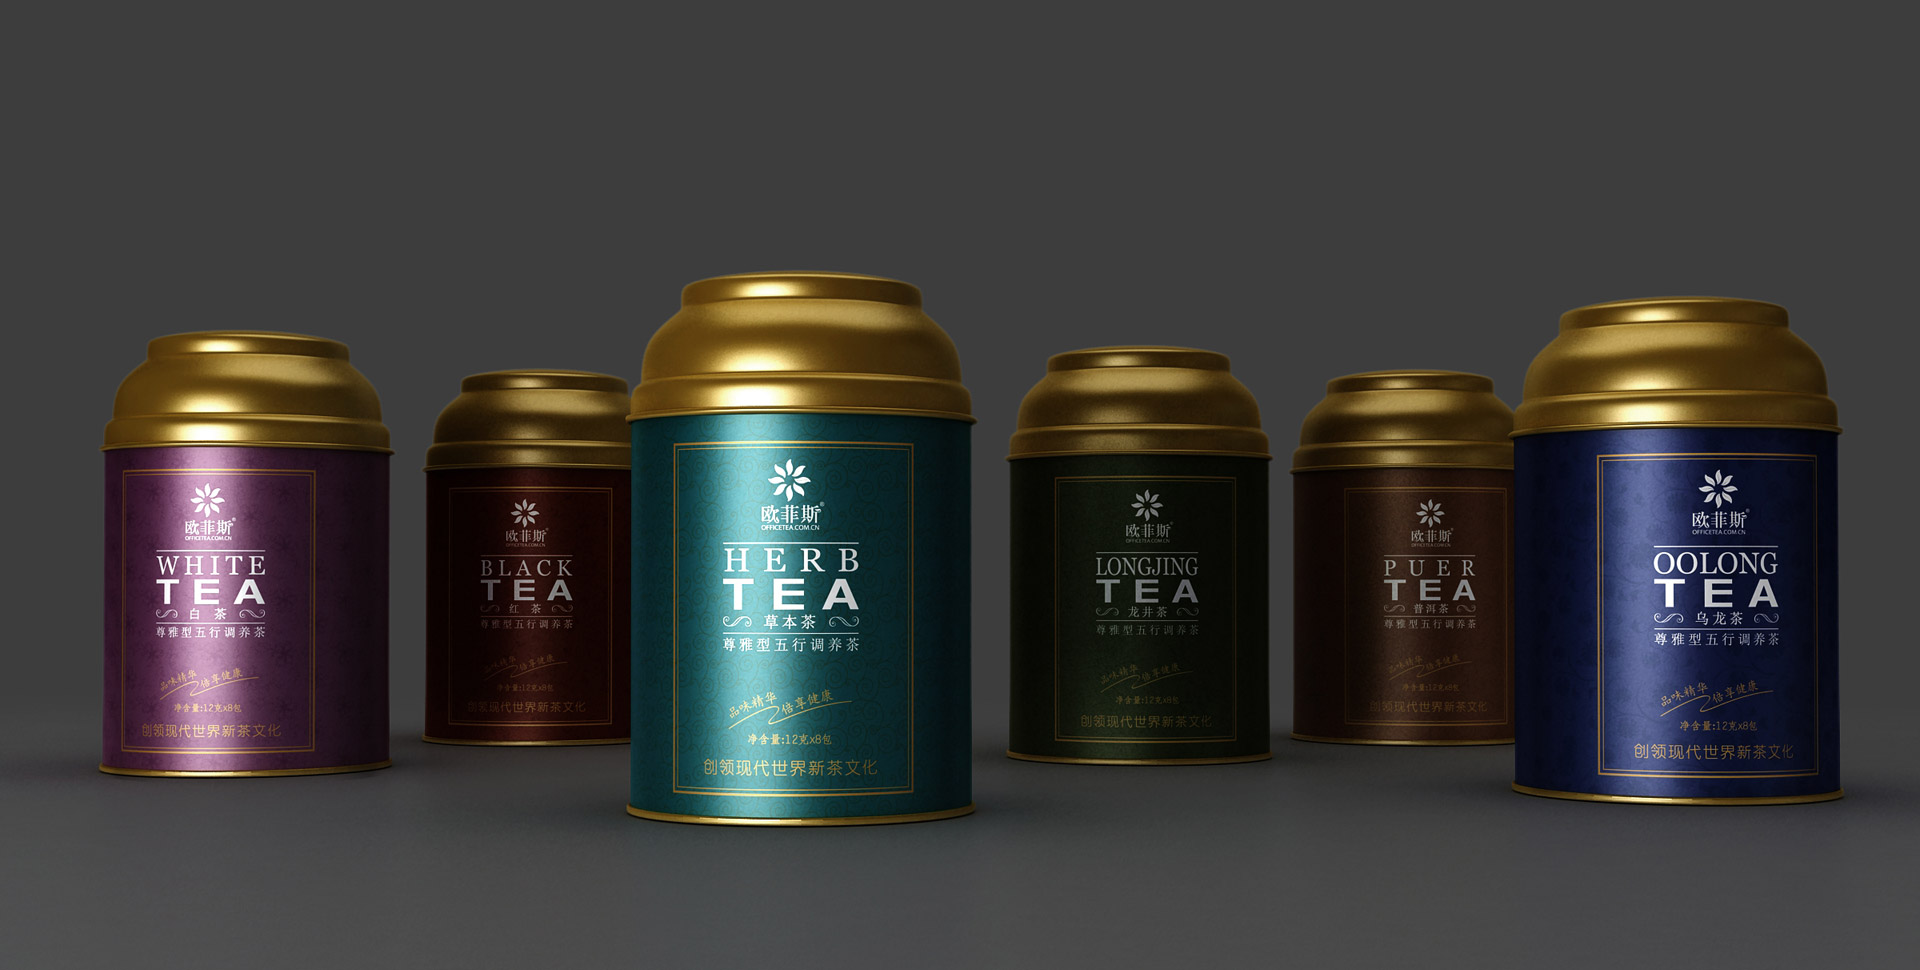 小罐茶包装设计，茶叶包装设计公司，乌龙茶包装设计，龙井茶包装设计，铁观音包装设计，普洱茶包装设计，绿茶包装设计，红茶包装设计，上海包装设计公司